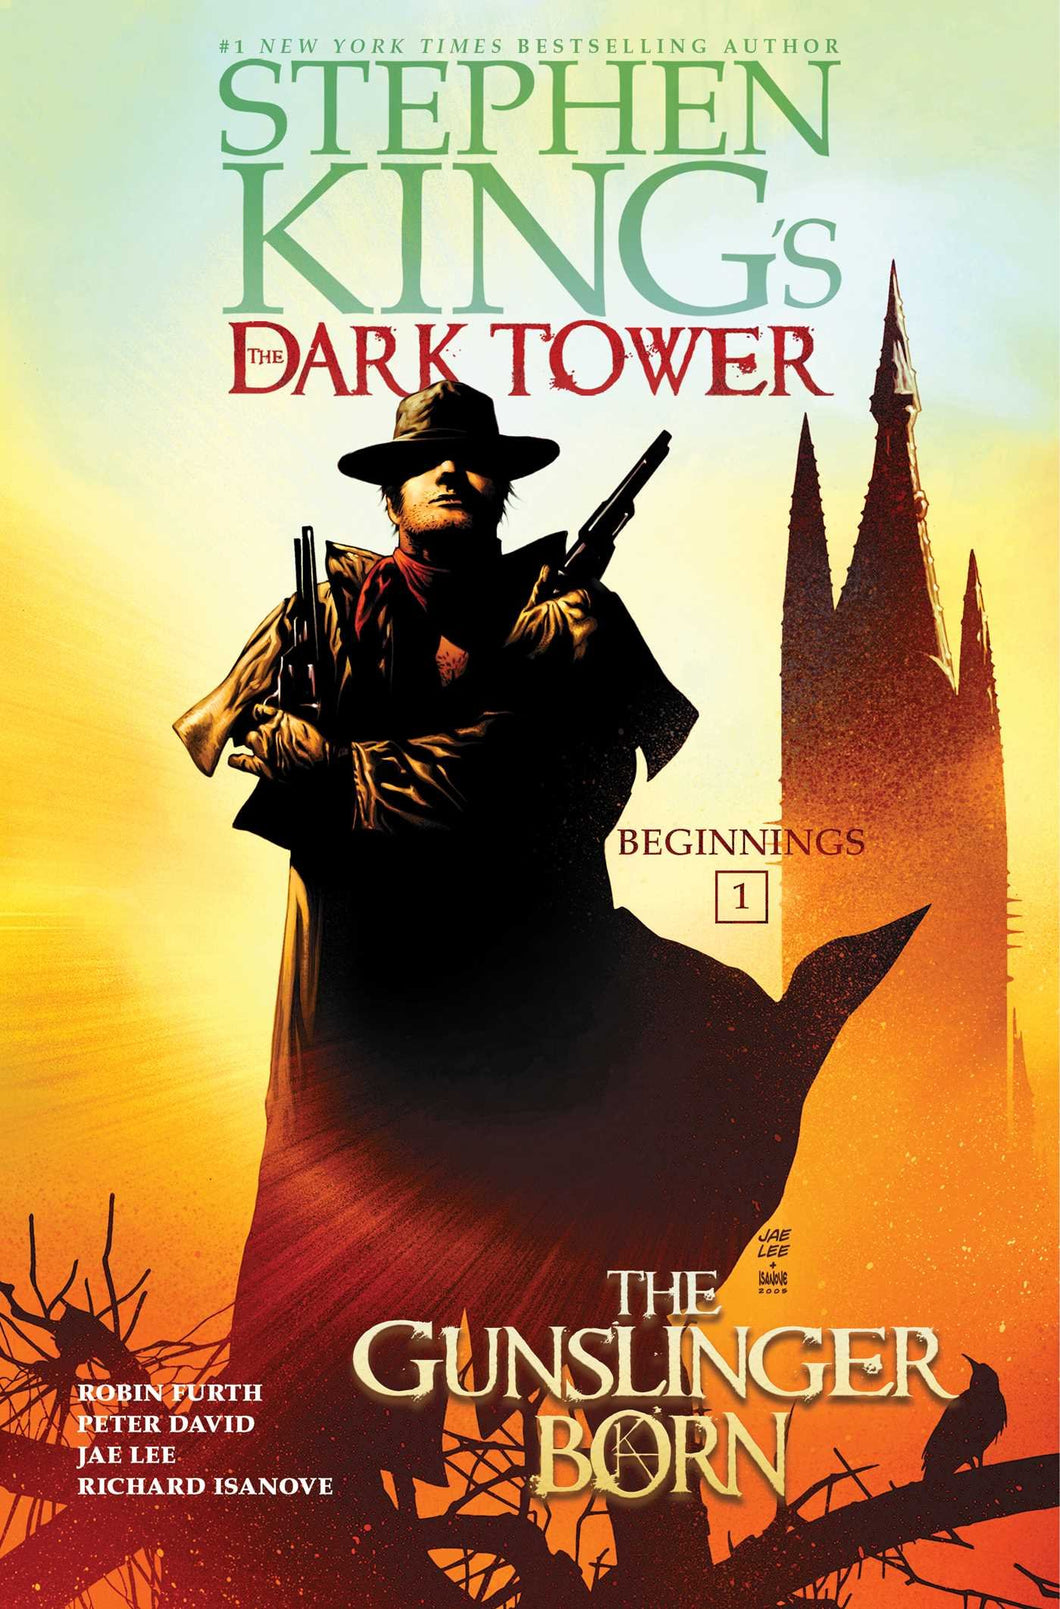 Stephen King's Dark Tower: The Gunslinger Born (TPB) (Hardcover) (2017)